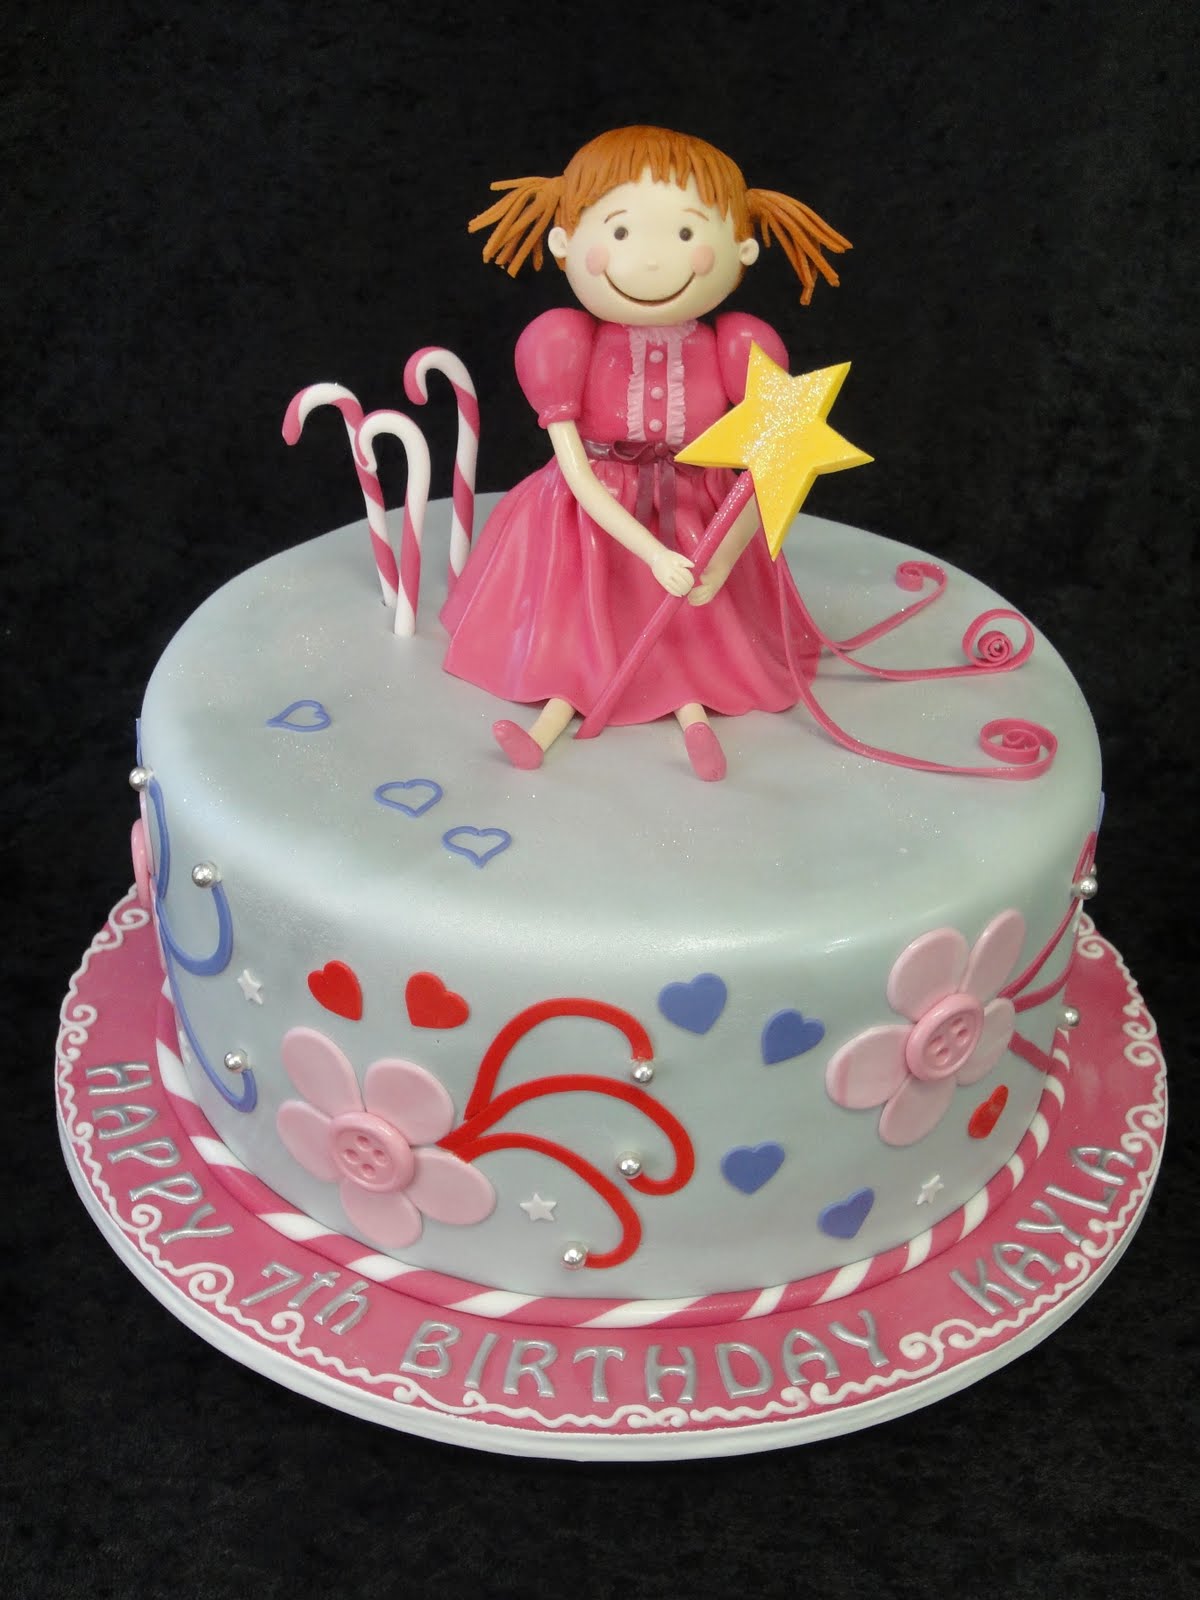 Cake Blog, Because Every Cake has a Story!: Fun Birthday Cakes